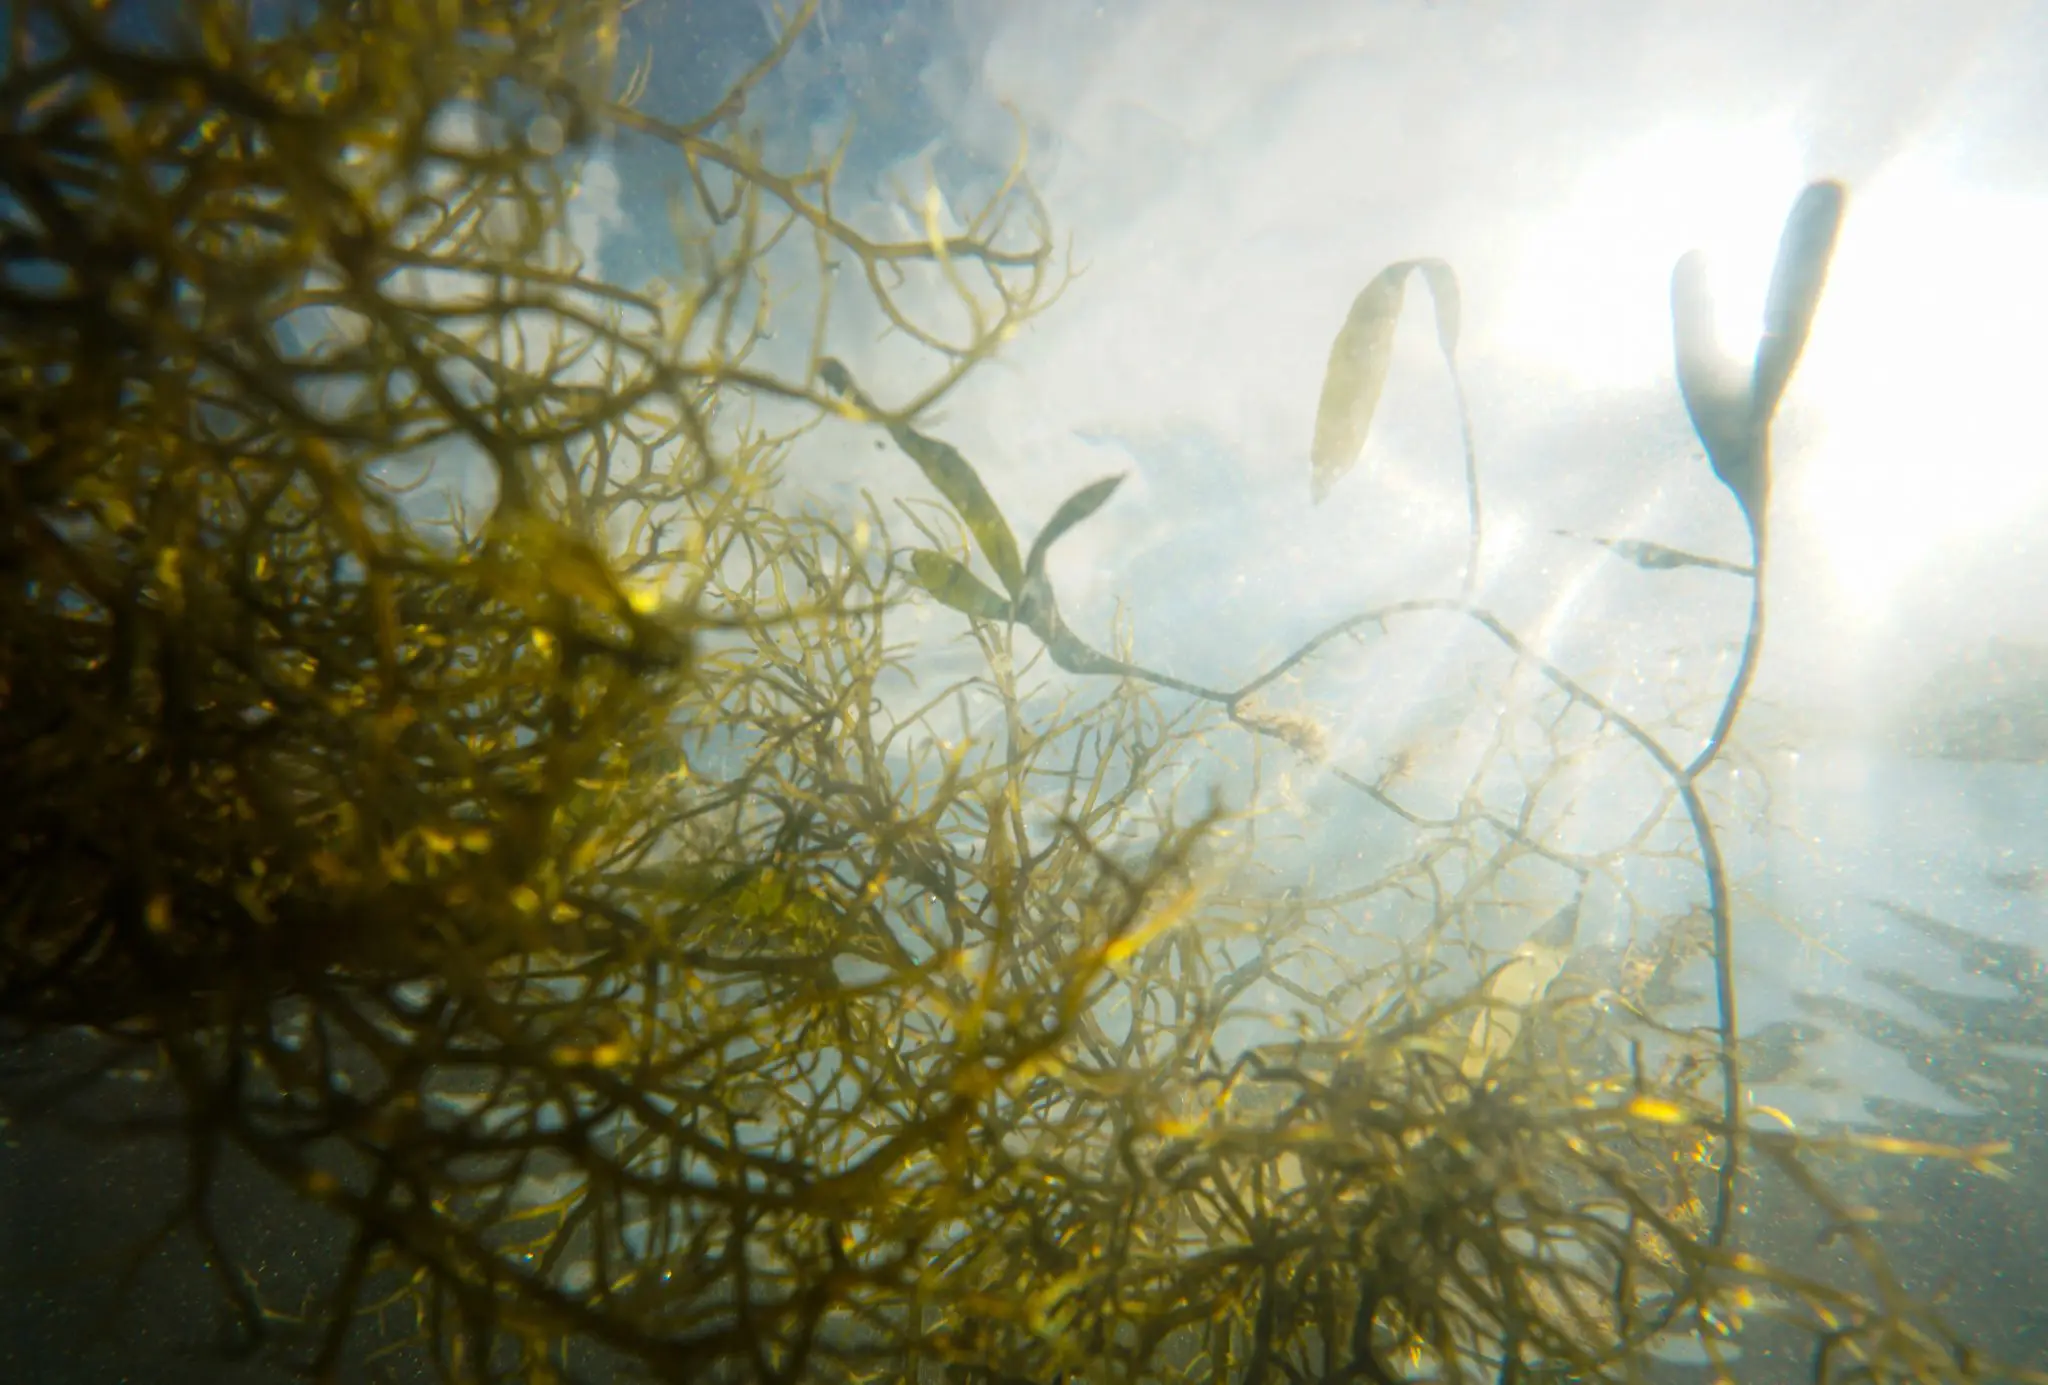 Fazenda de algas marinhas – Aliadas contra mudanças climáticas - ALGASTECH